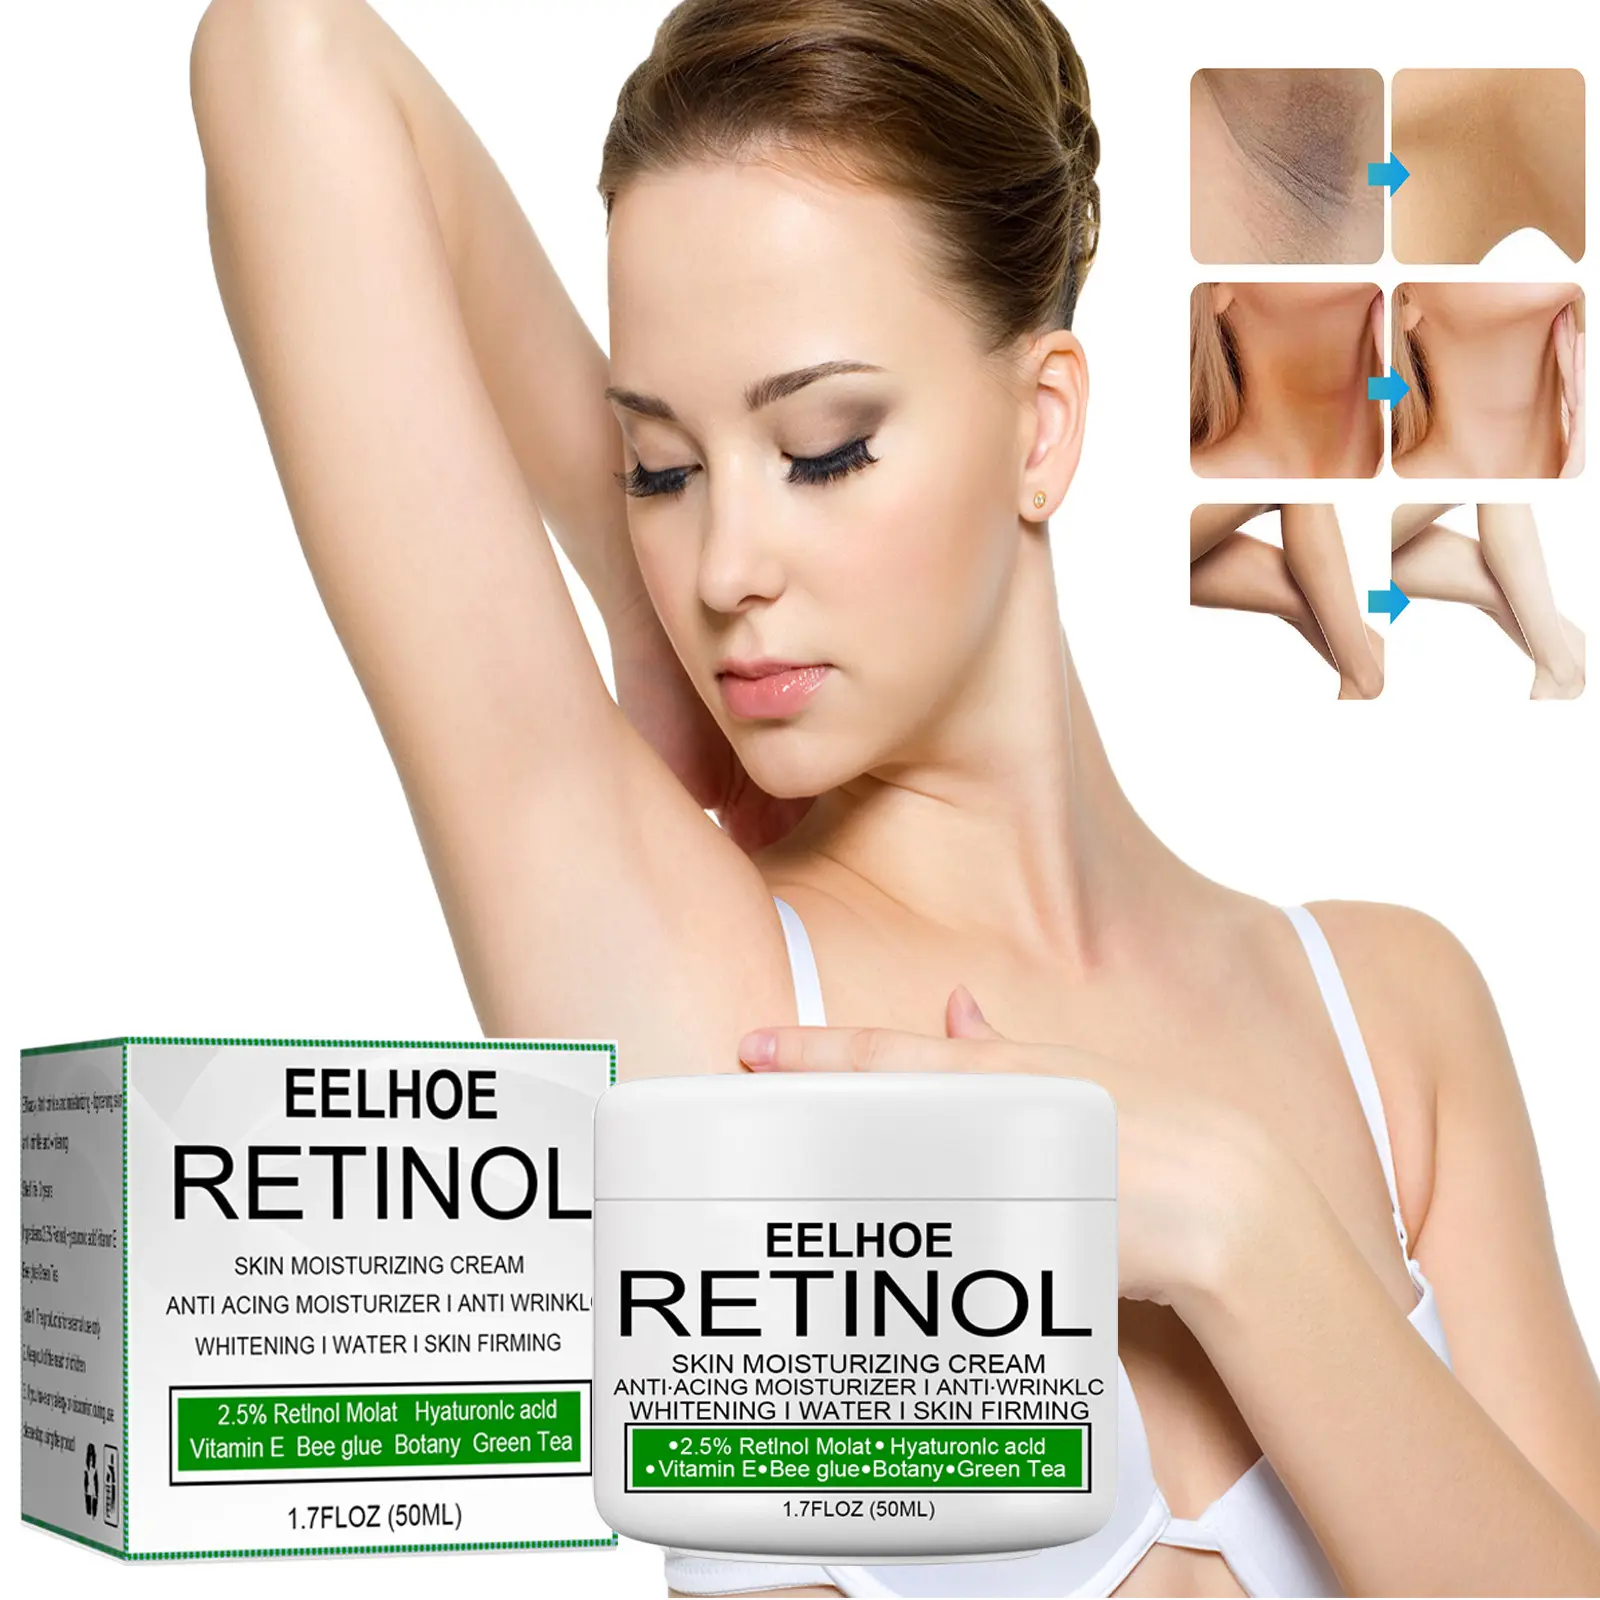 Eelhoe Bleaching Cream For Dark Skin Care Product Whitening Body Care Lotion Retinol Moisturizing Cream